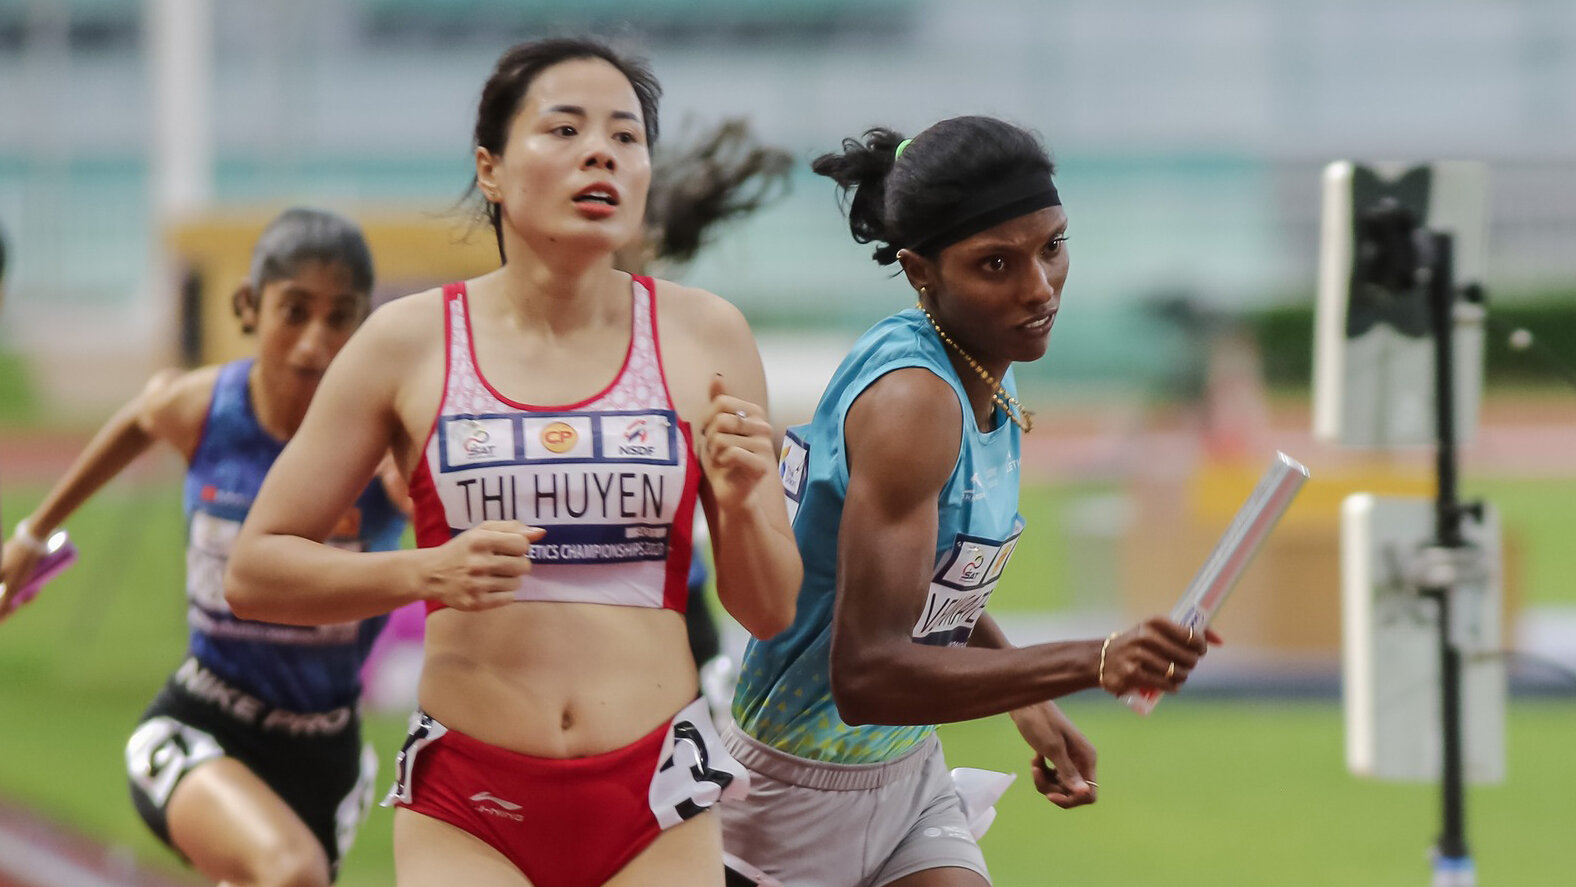 Nguyễn Thị Huyền sẽ thi đấu vòng loại 400m vượt rào.